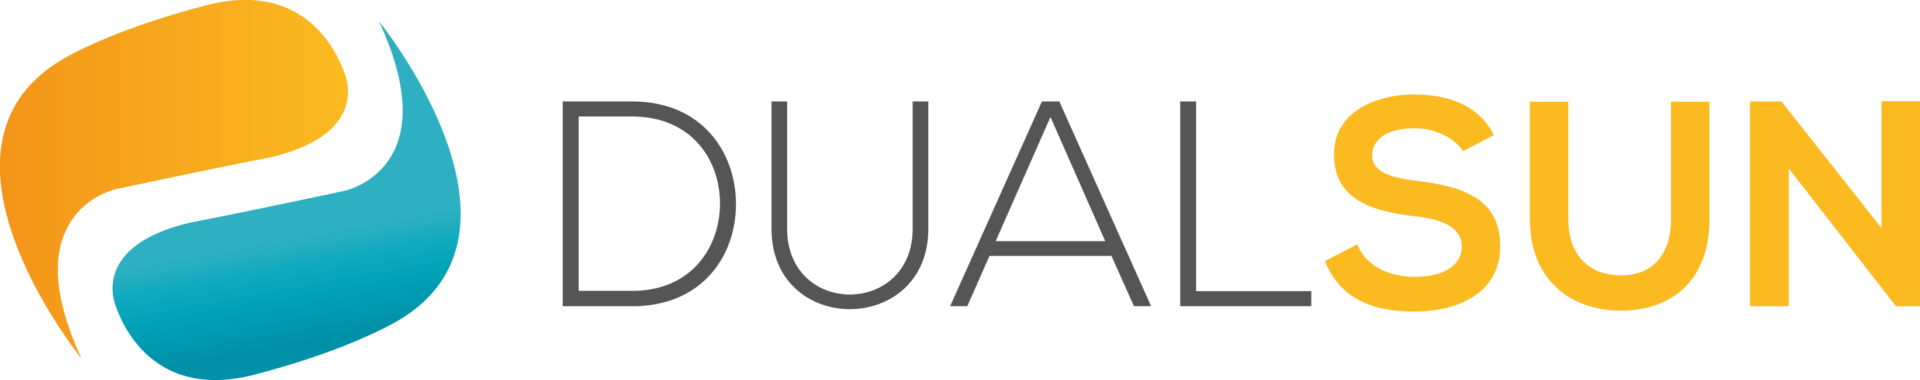 DualSun_Logo1